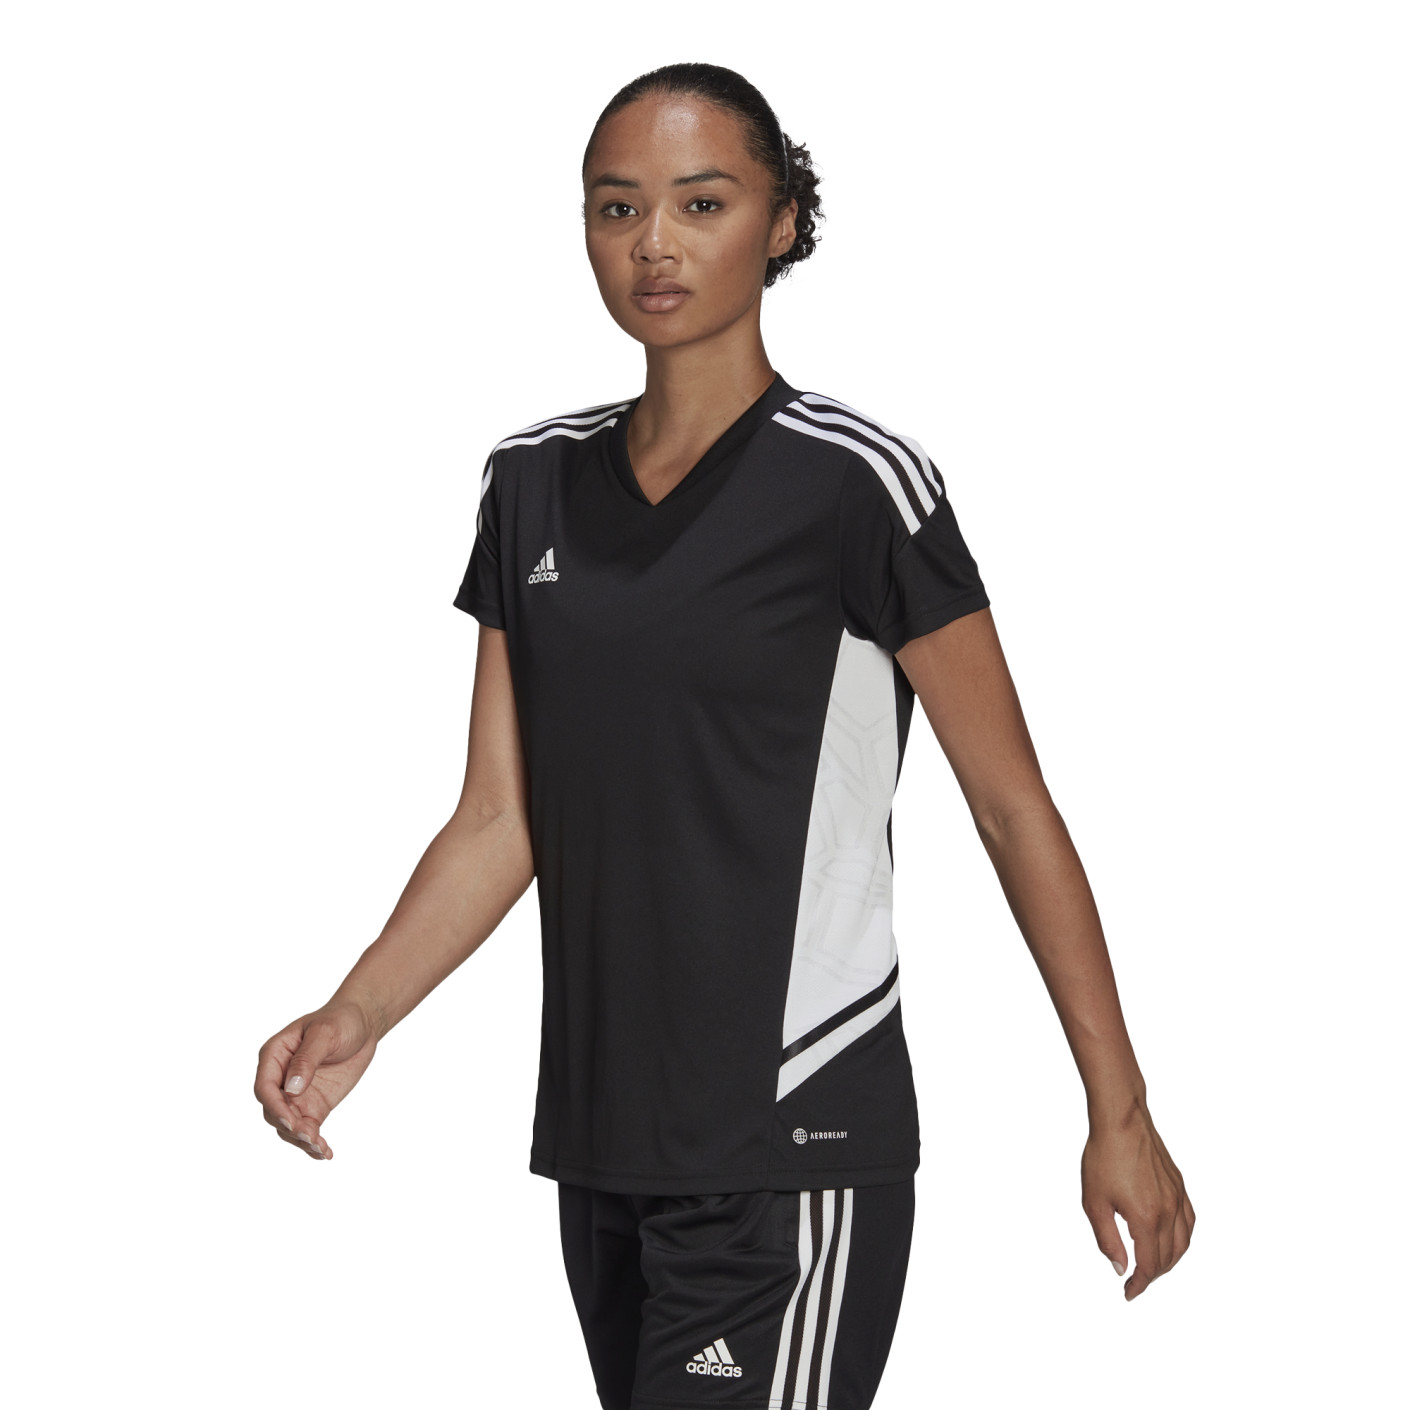 Kust Verklaring in de tussentijd adidas Condivo 22 Voetbalshirt Dames Zwart Wit - Voetbalshop.be